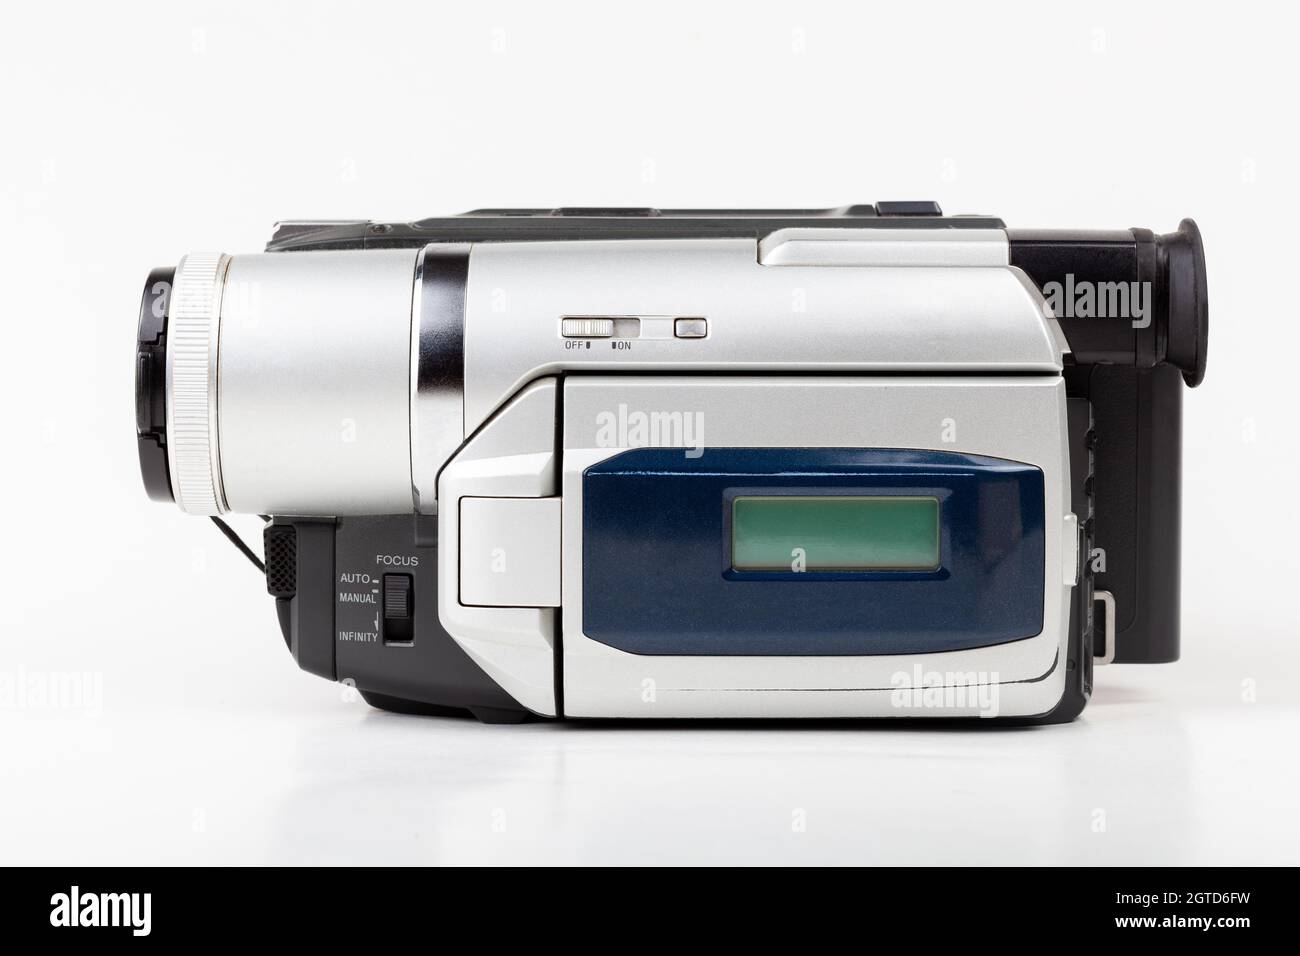 Old video camera equipment Banque de photographies et d'images à haute  résolution - Alamy